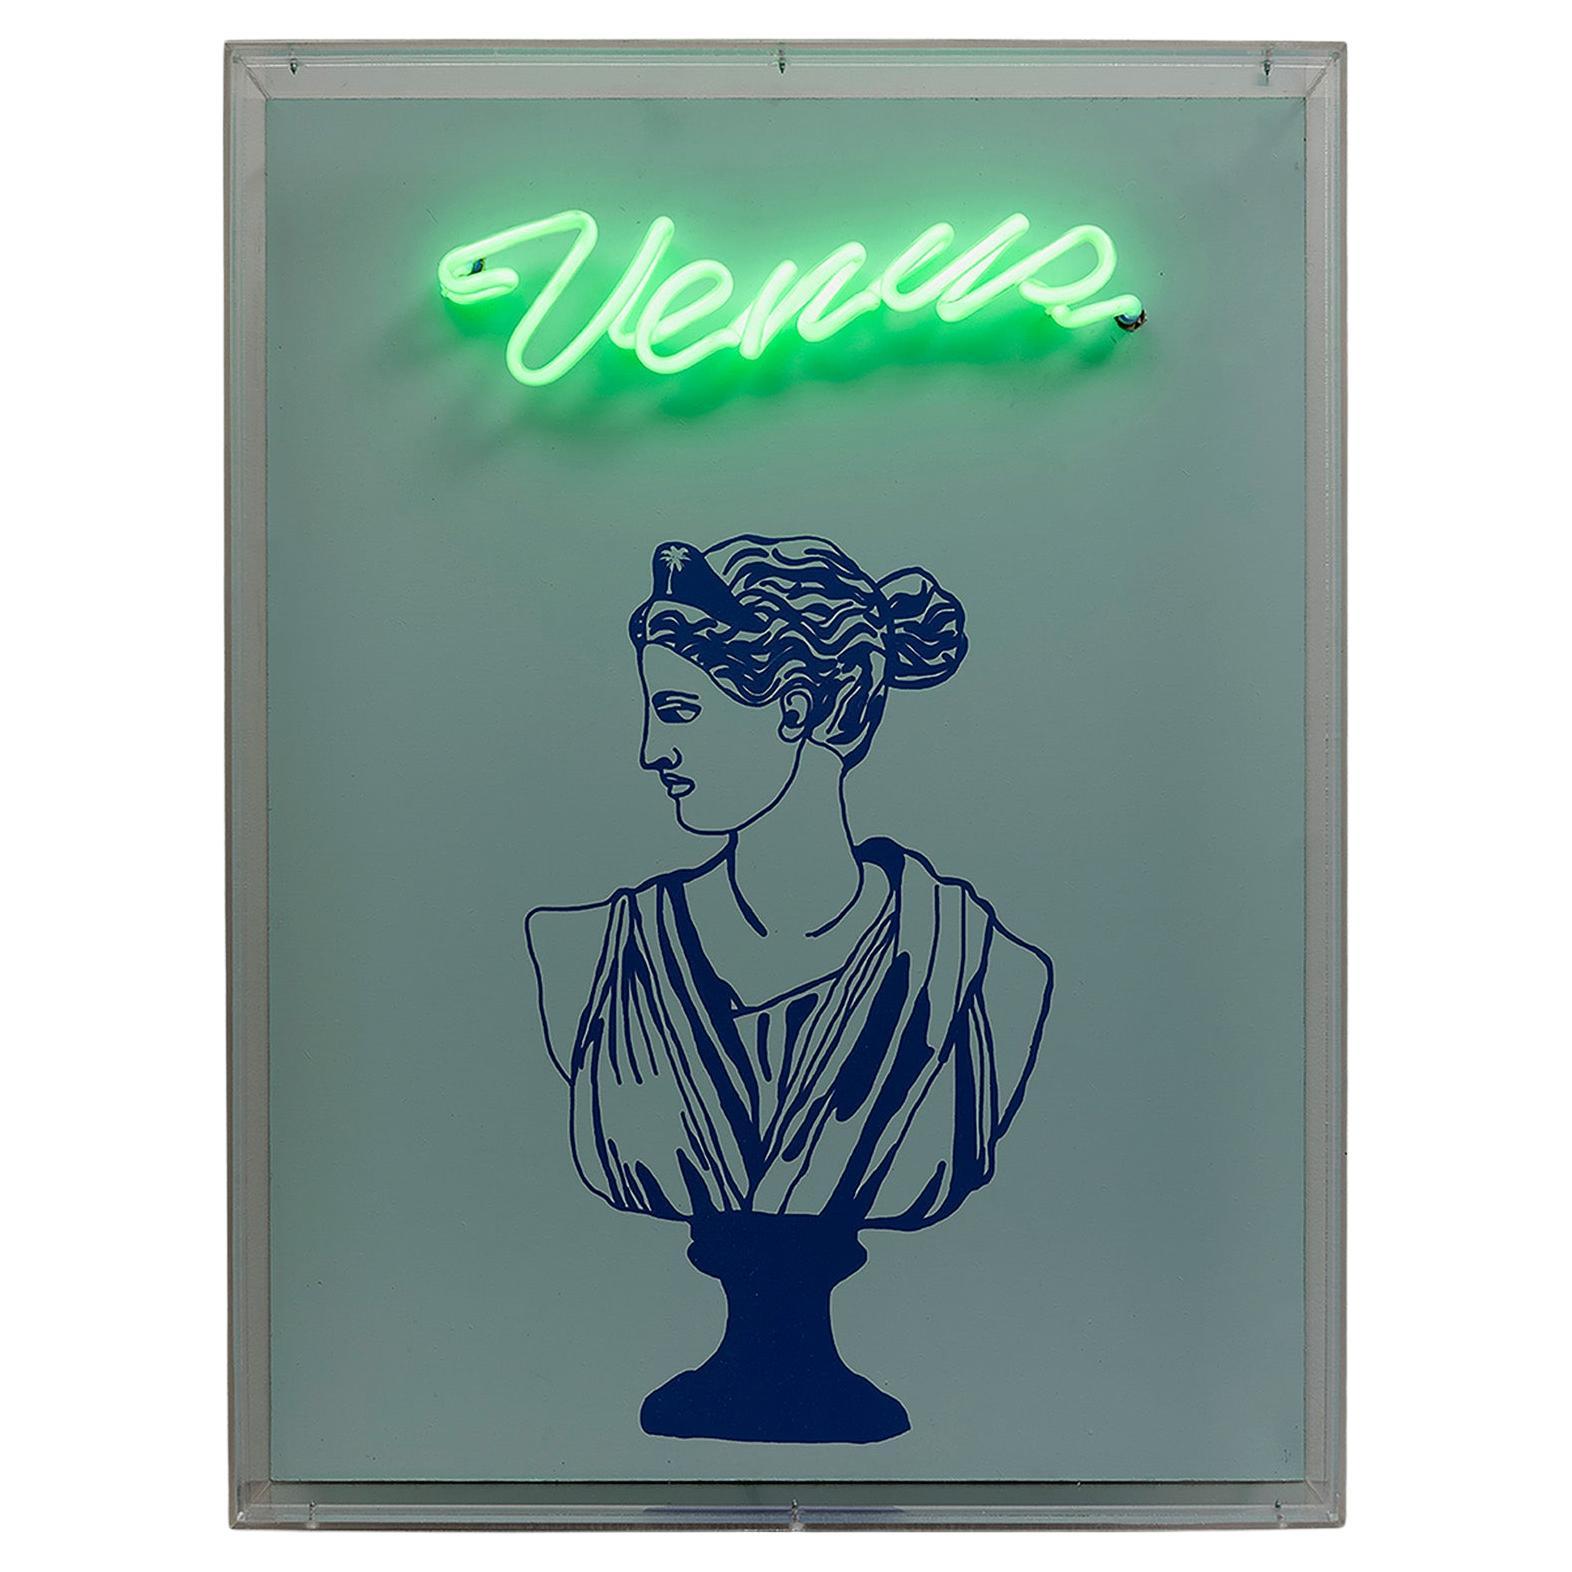 Venus. Neon-Lichtkasten Wandskulptur. Aus der Serie Neon Classics